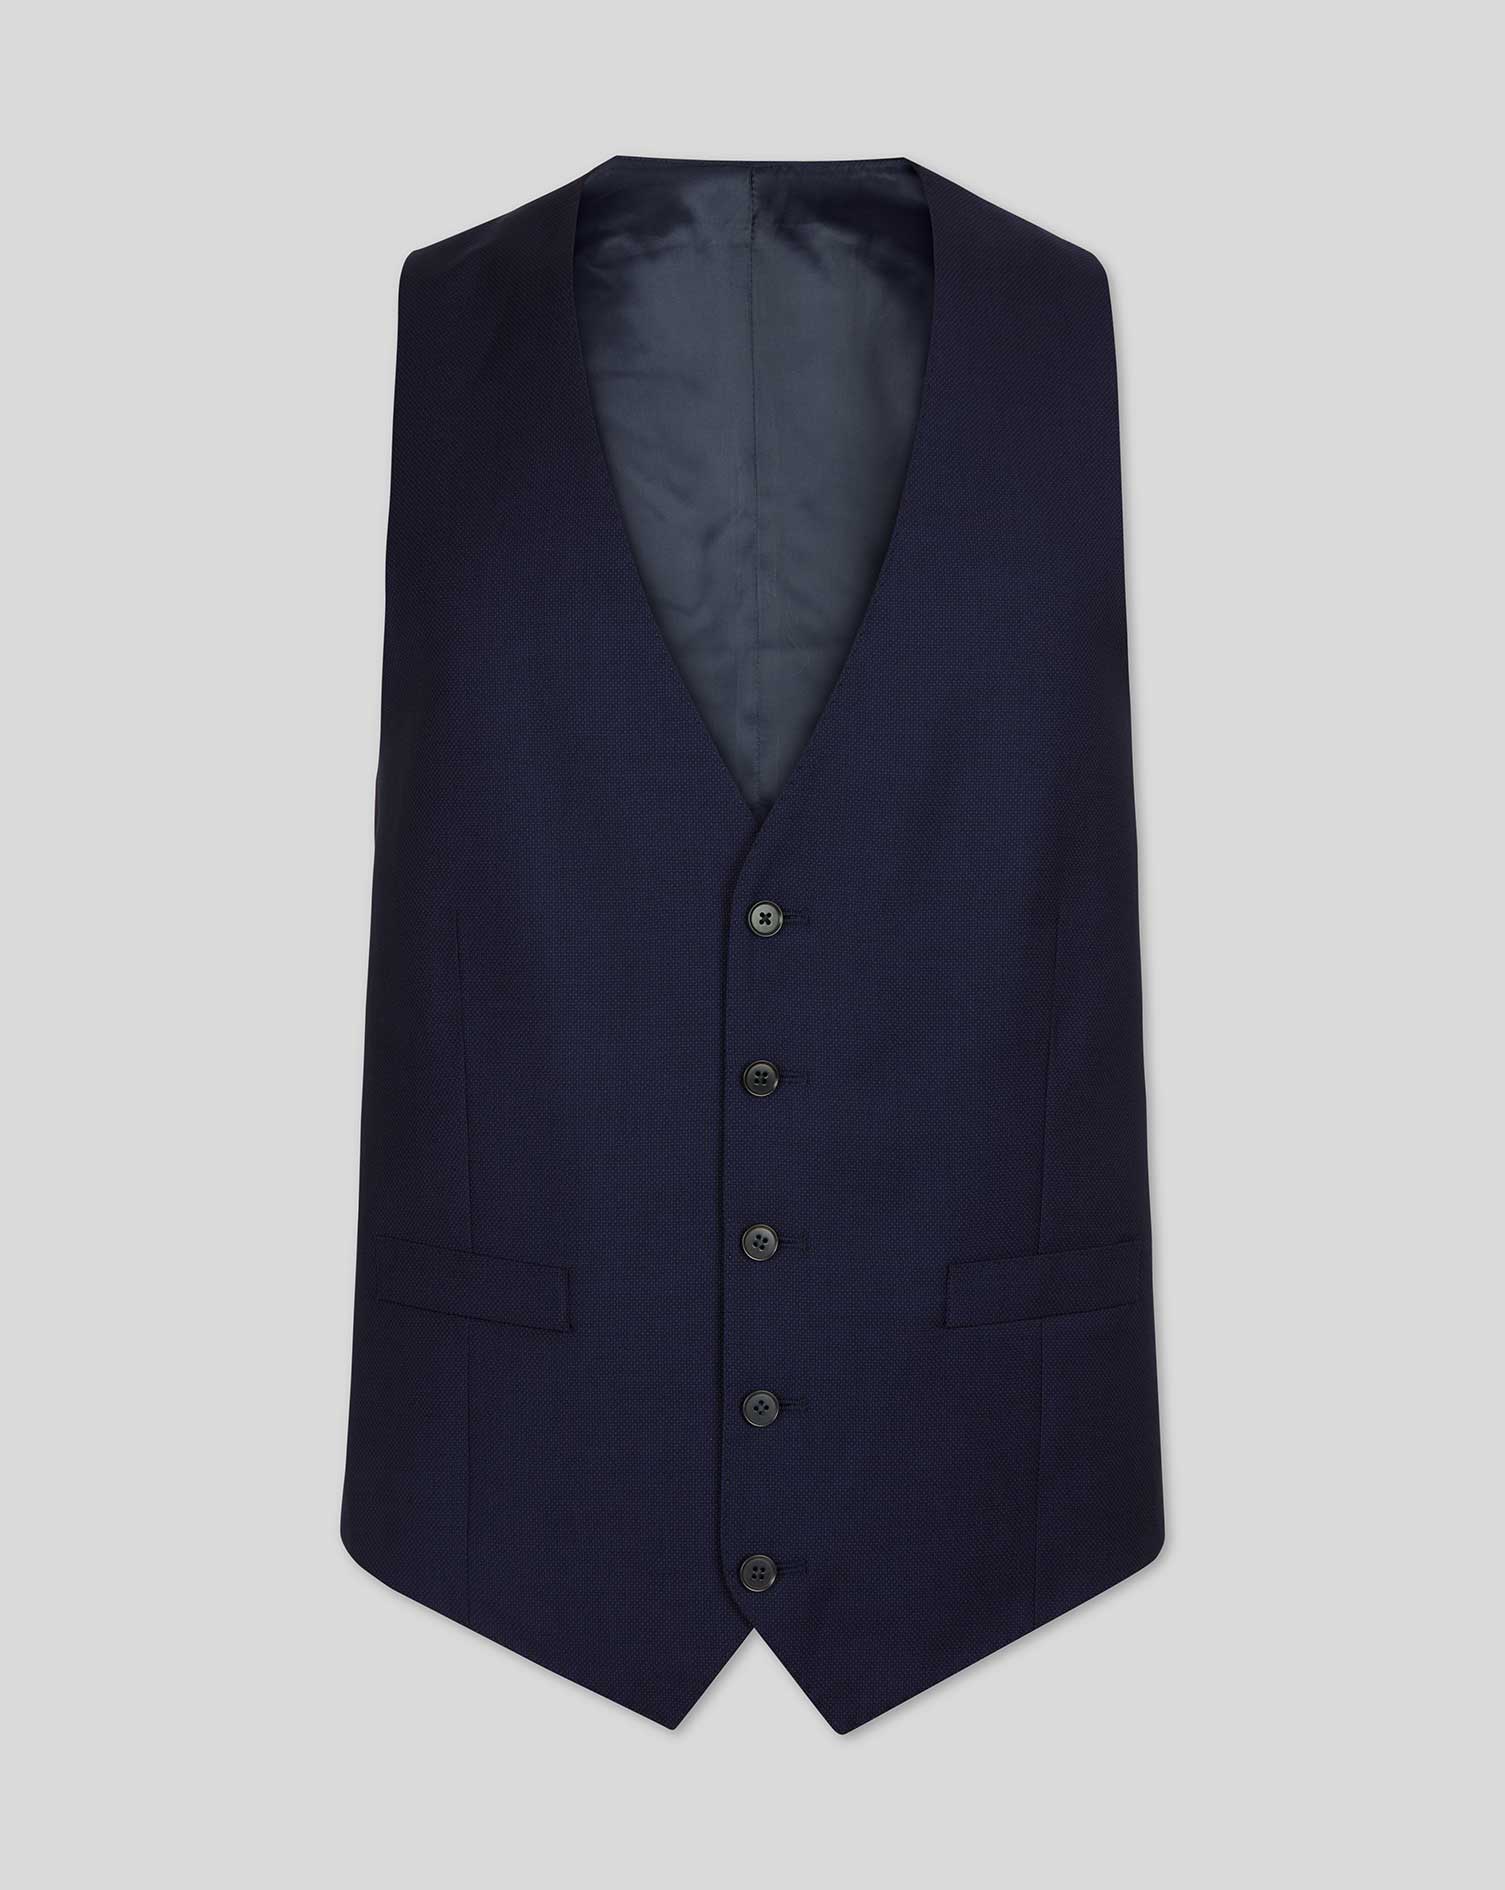 Men's Charles Tyrwhitt Birdseye Travel Suit Waistcoat - Ink Blue Size w42 Wool
